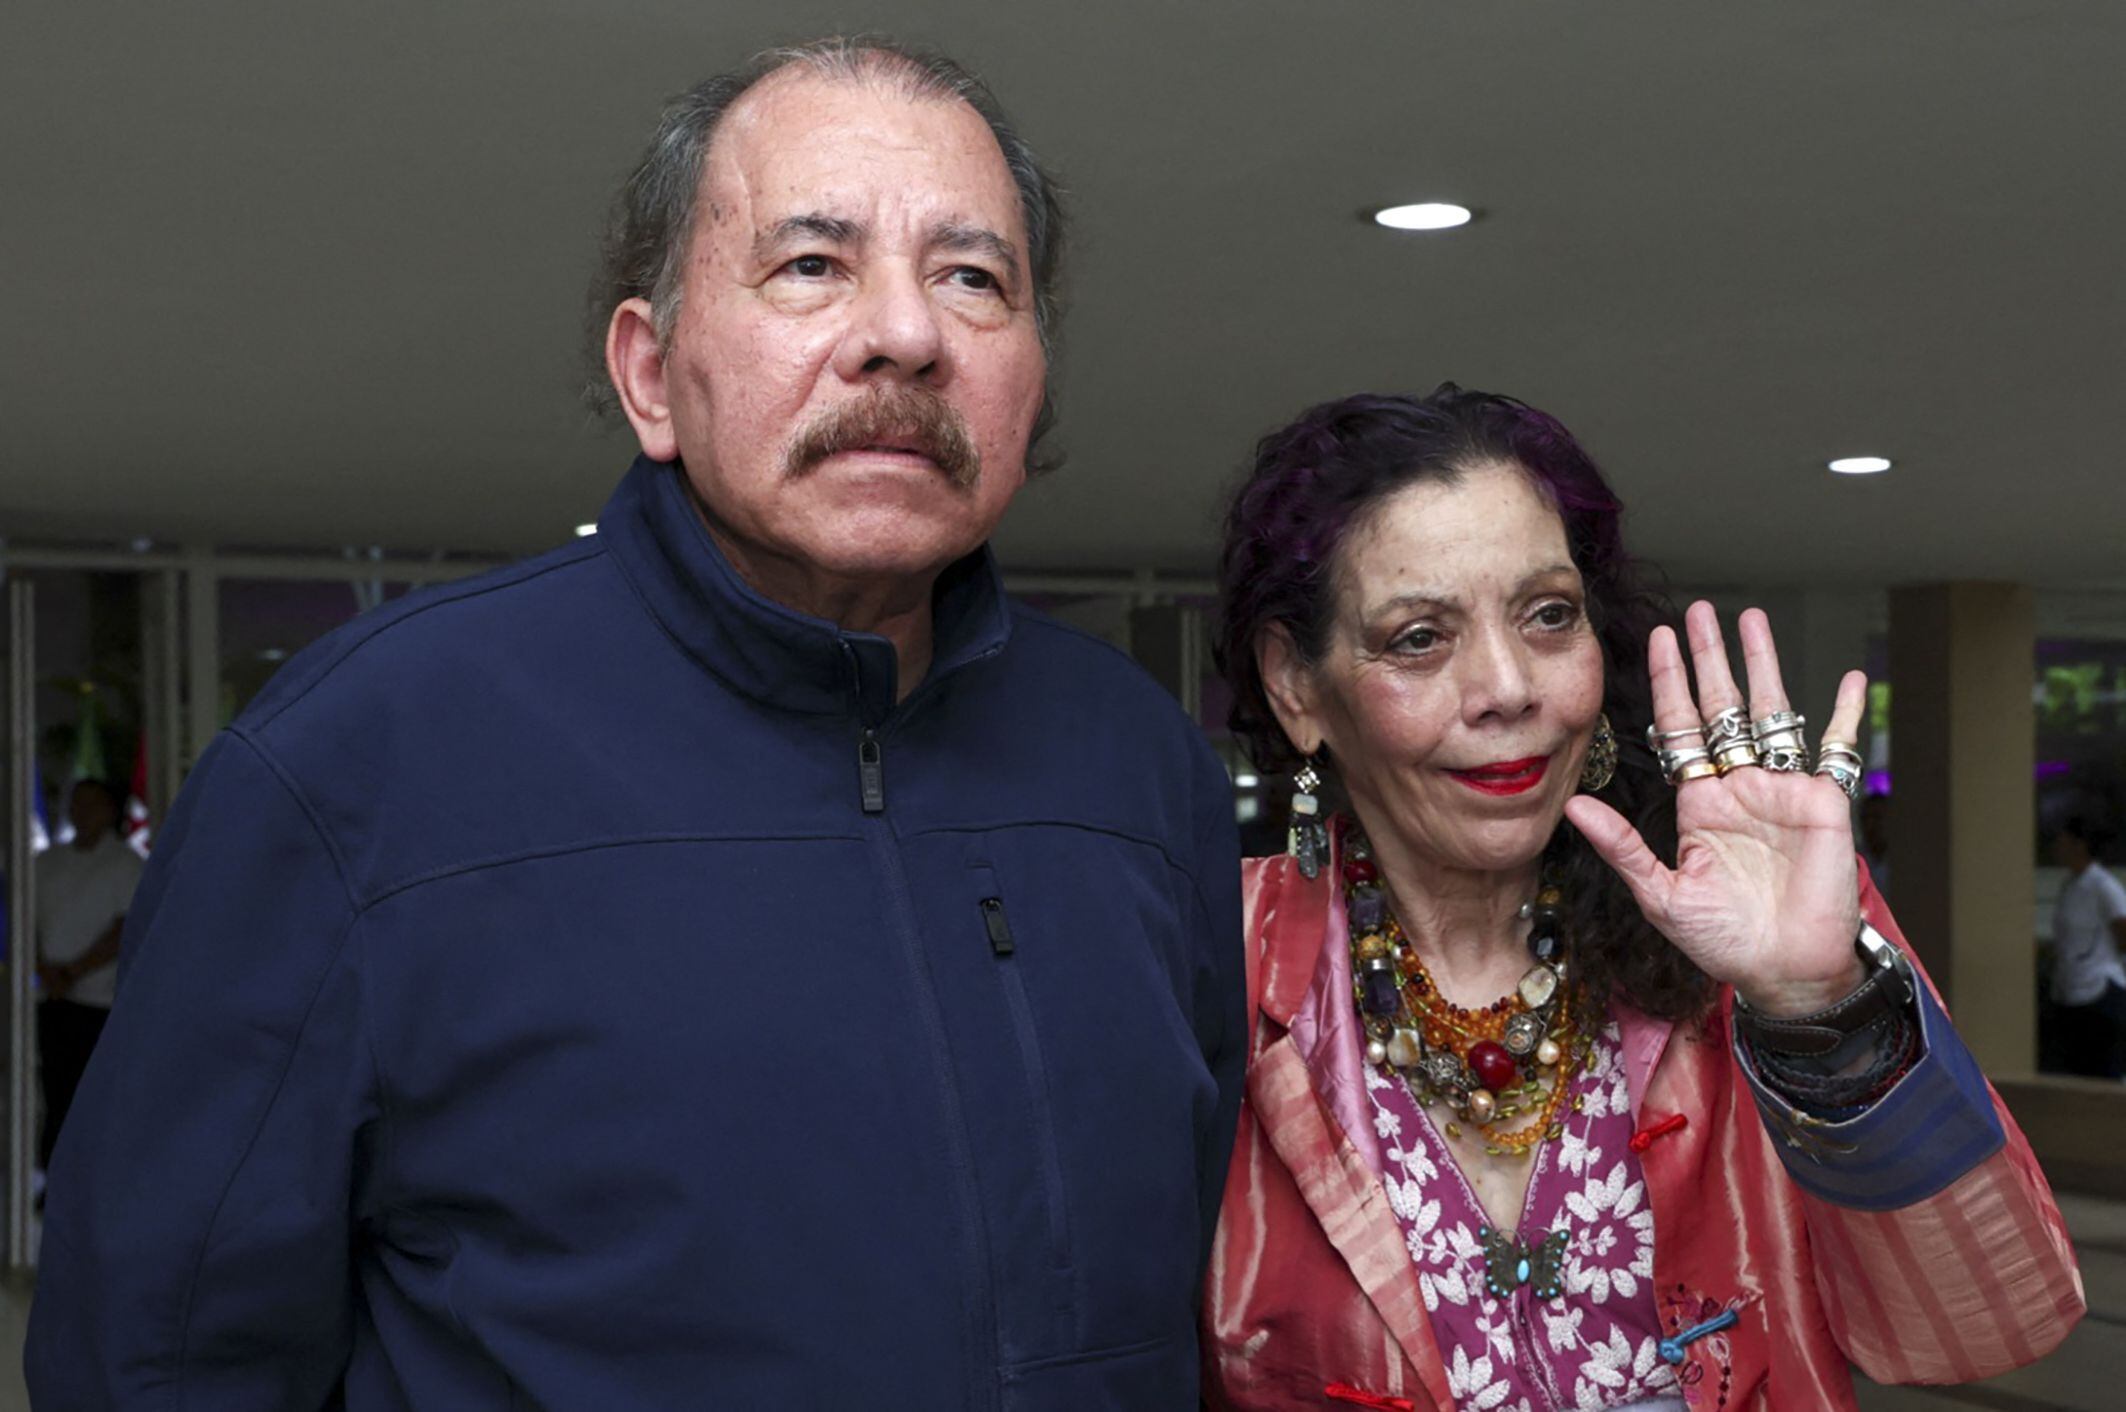 El dictador de Nicaragua, Daniel Ortega, y su esposa Rosario Murillo, han sido señalados de posibles responsabilidades en crímenes de lesa humanidad por expertos de naciones Unidas. (Foto Europa Press)